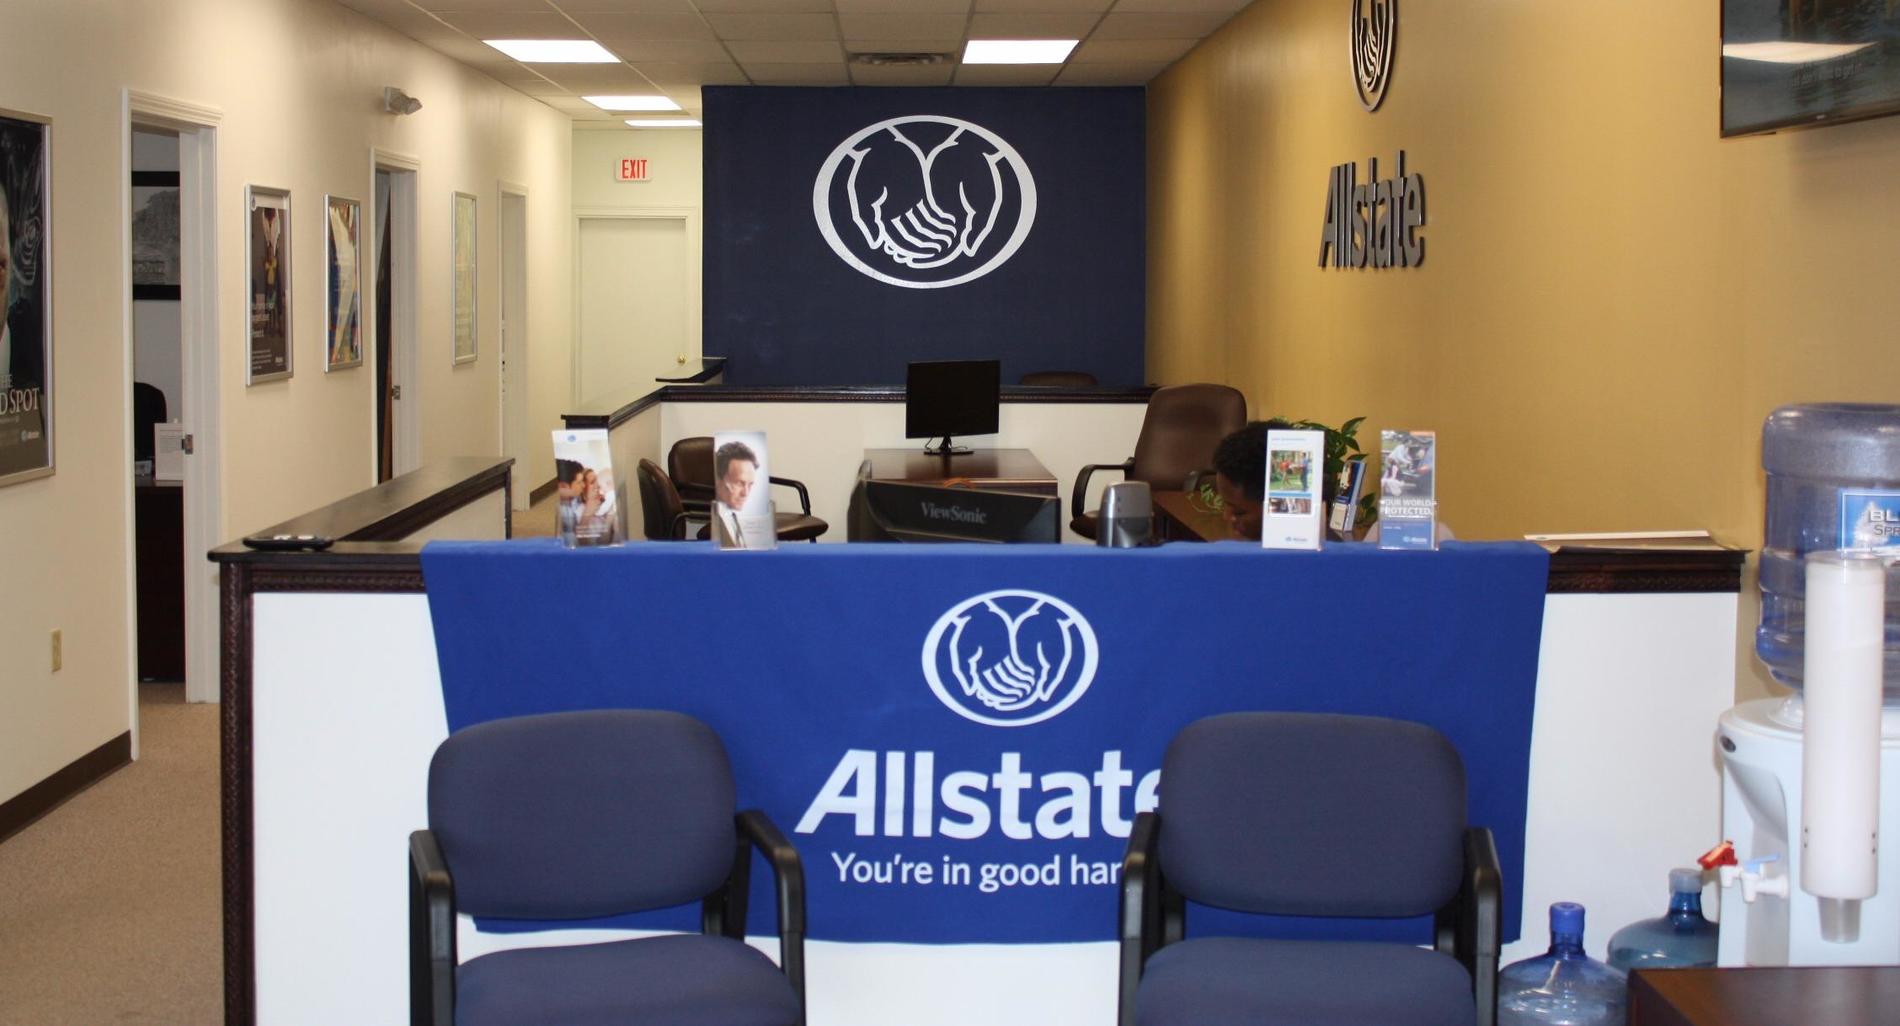 Images Andre Jett: Allstate Insurance